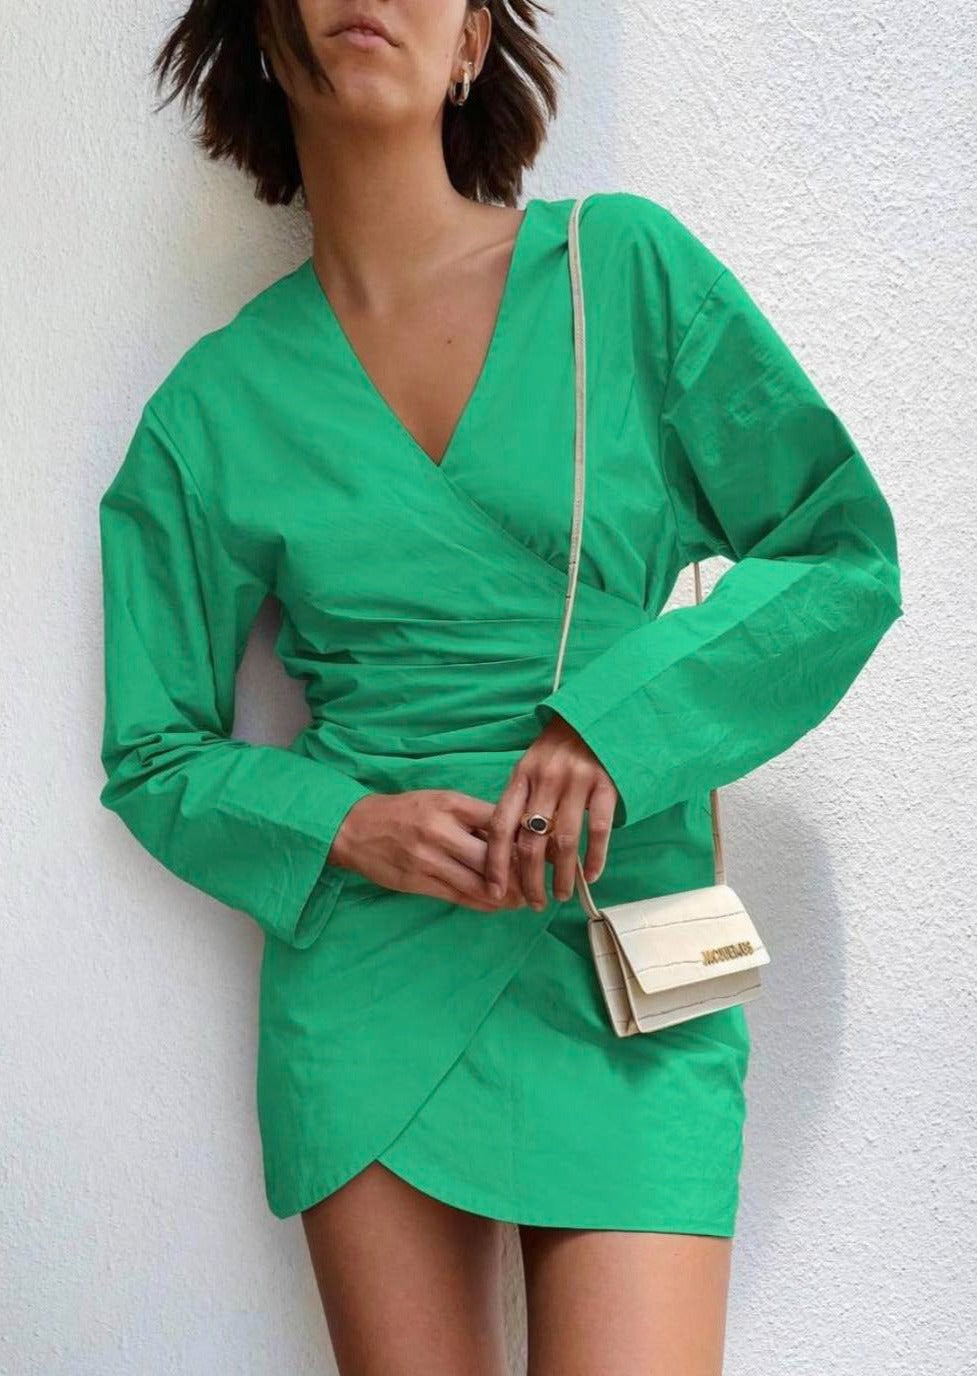 Дамска рокля MARIELA GREEN  https://bvseductive.com/products/womans-s-dresses-mariela-green  красива къса рокля в наситено зелен цвят изработена в свободна кройка в сатенирана материя модел с яка и свободен, дълъг ръкав с широк маншет с прихлупване и